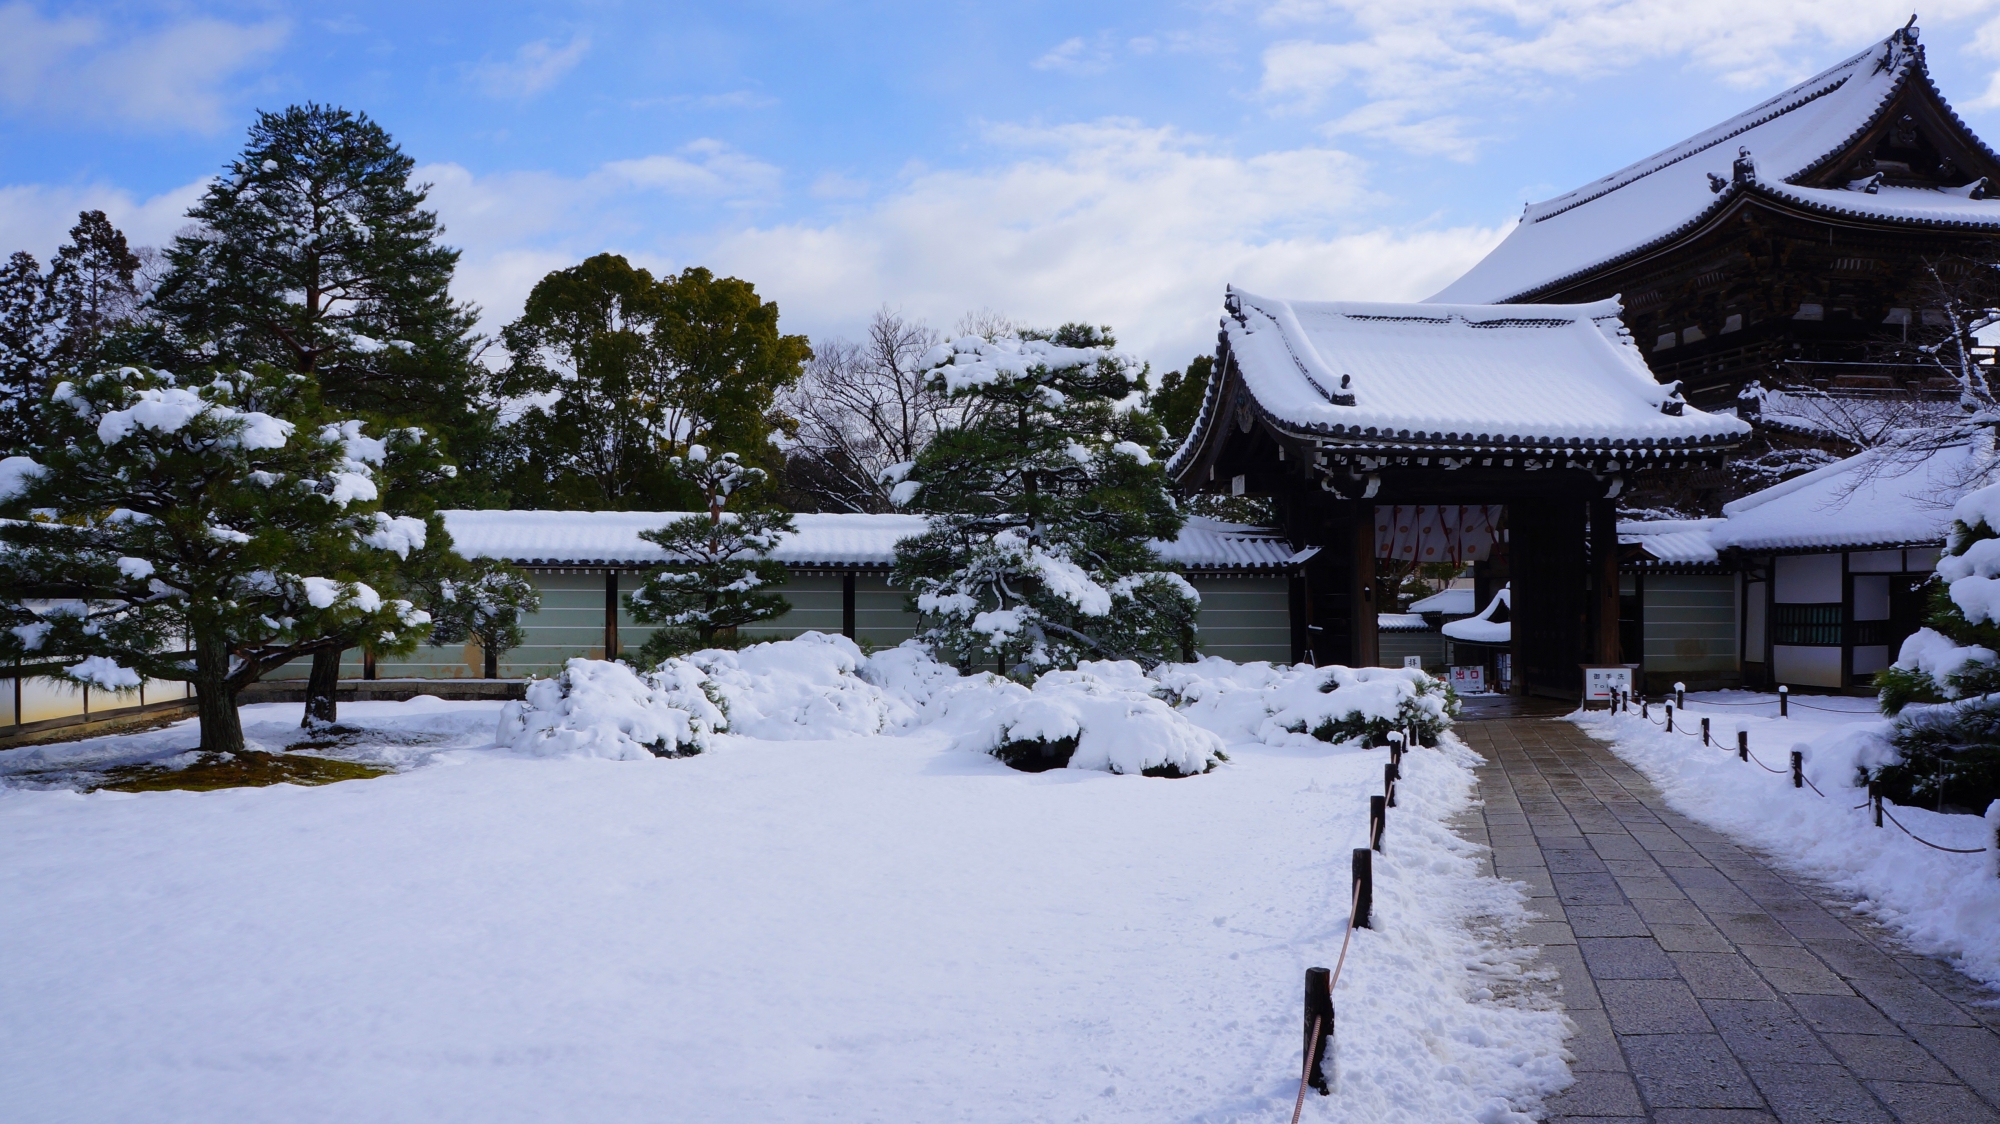 仁和寺の御殿玄関前の庭園の雪景色